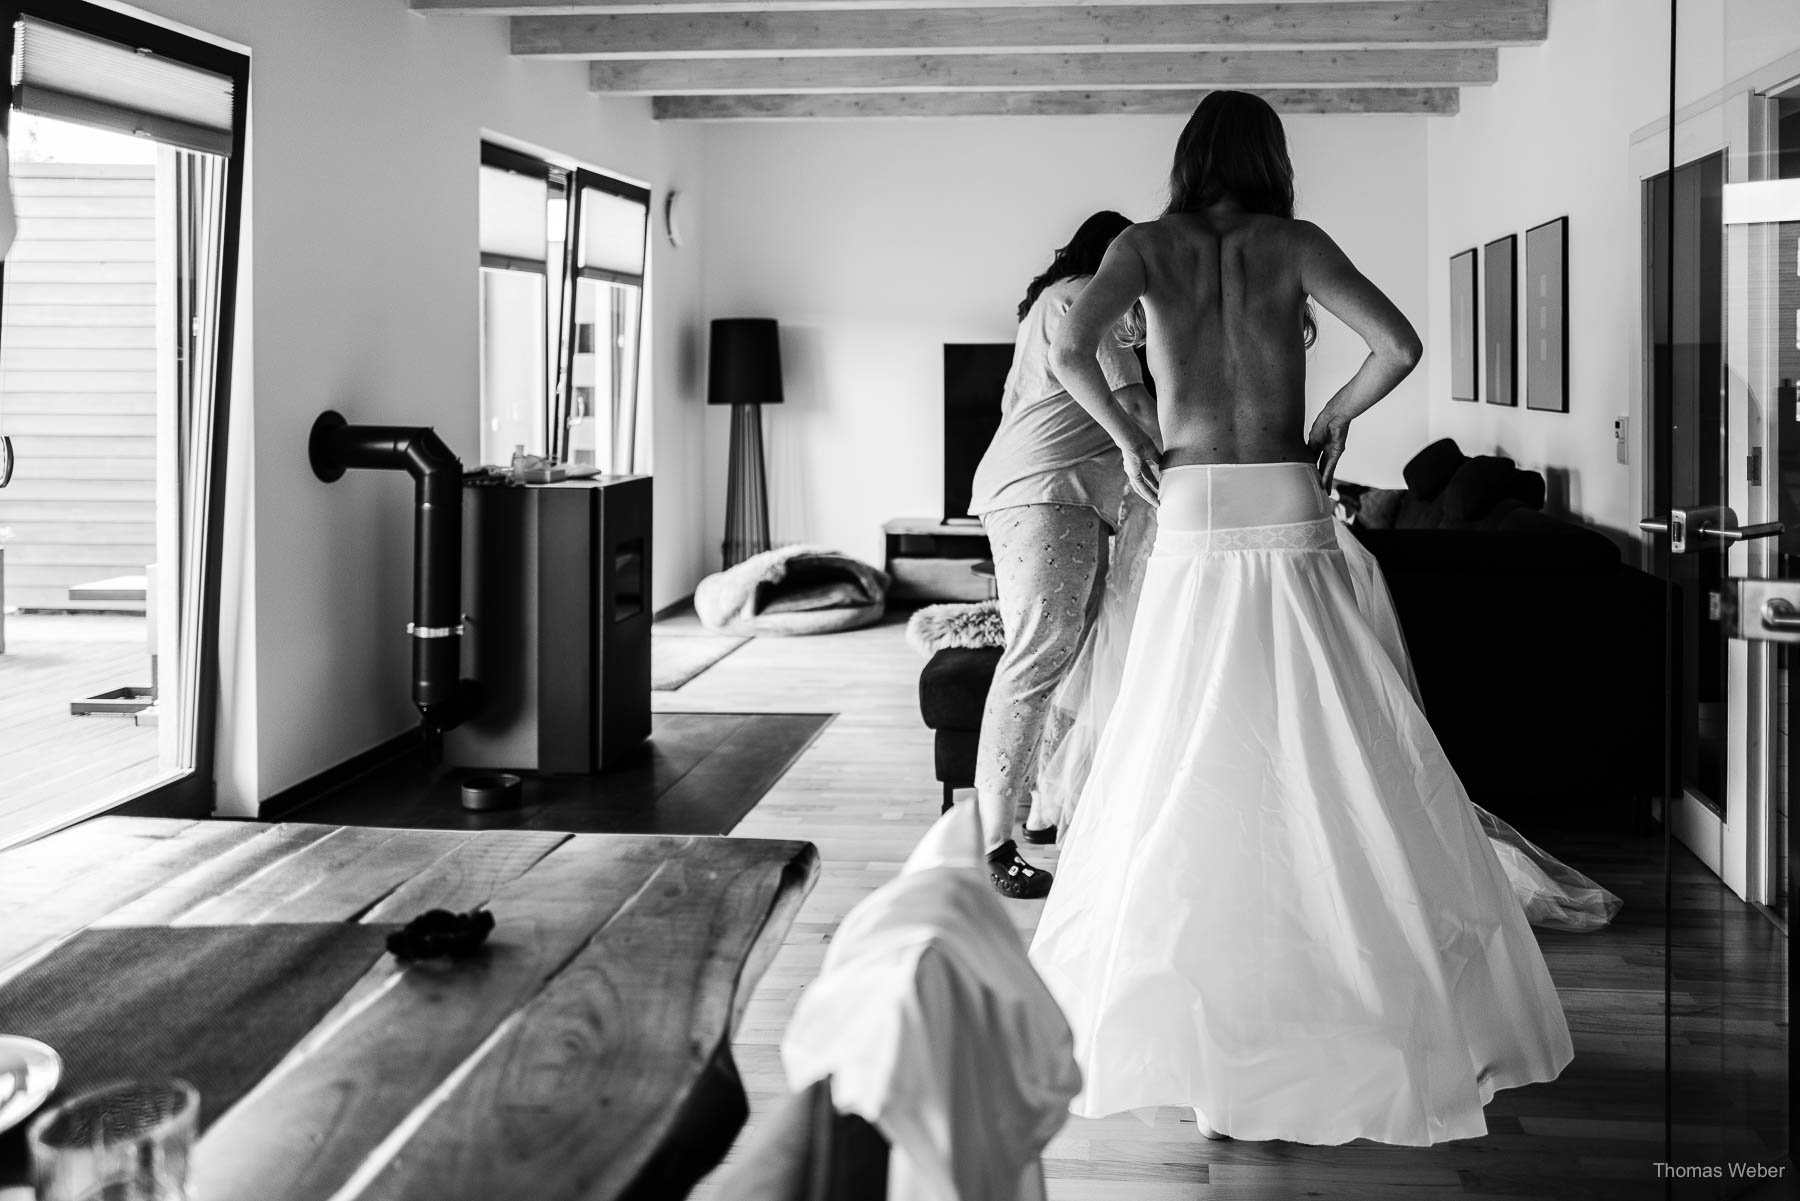 Ankleide der Braut vor der Hochzeit, Hochzeitsfotograf Thomas Weber aus Oldenburg